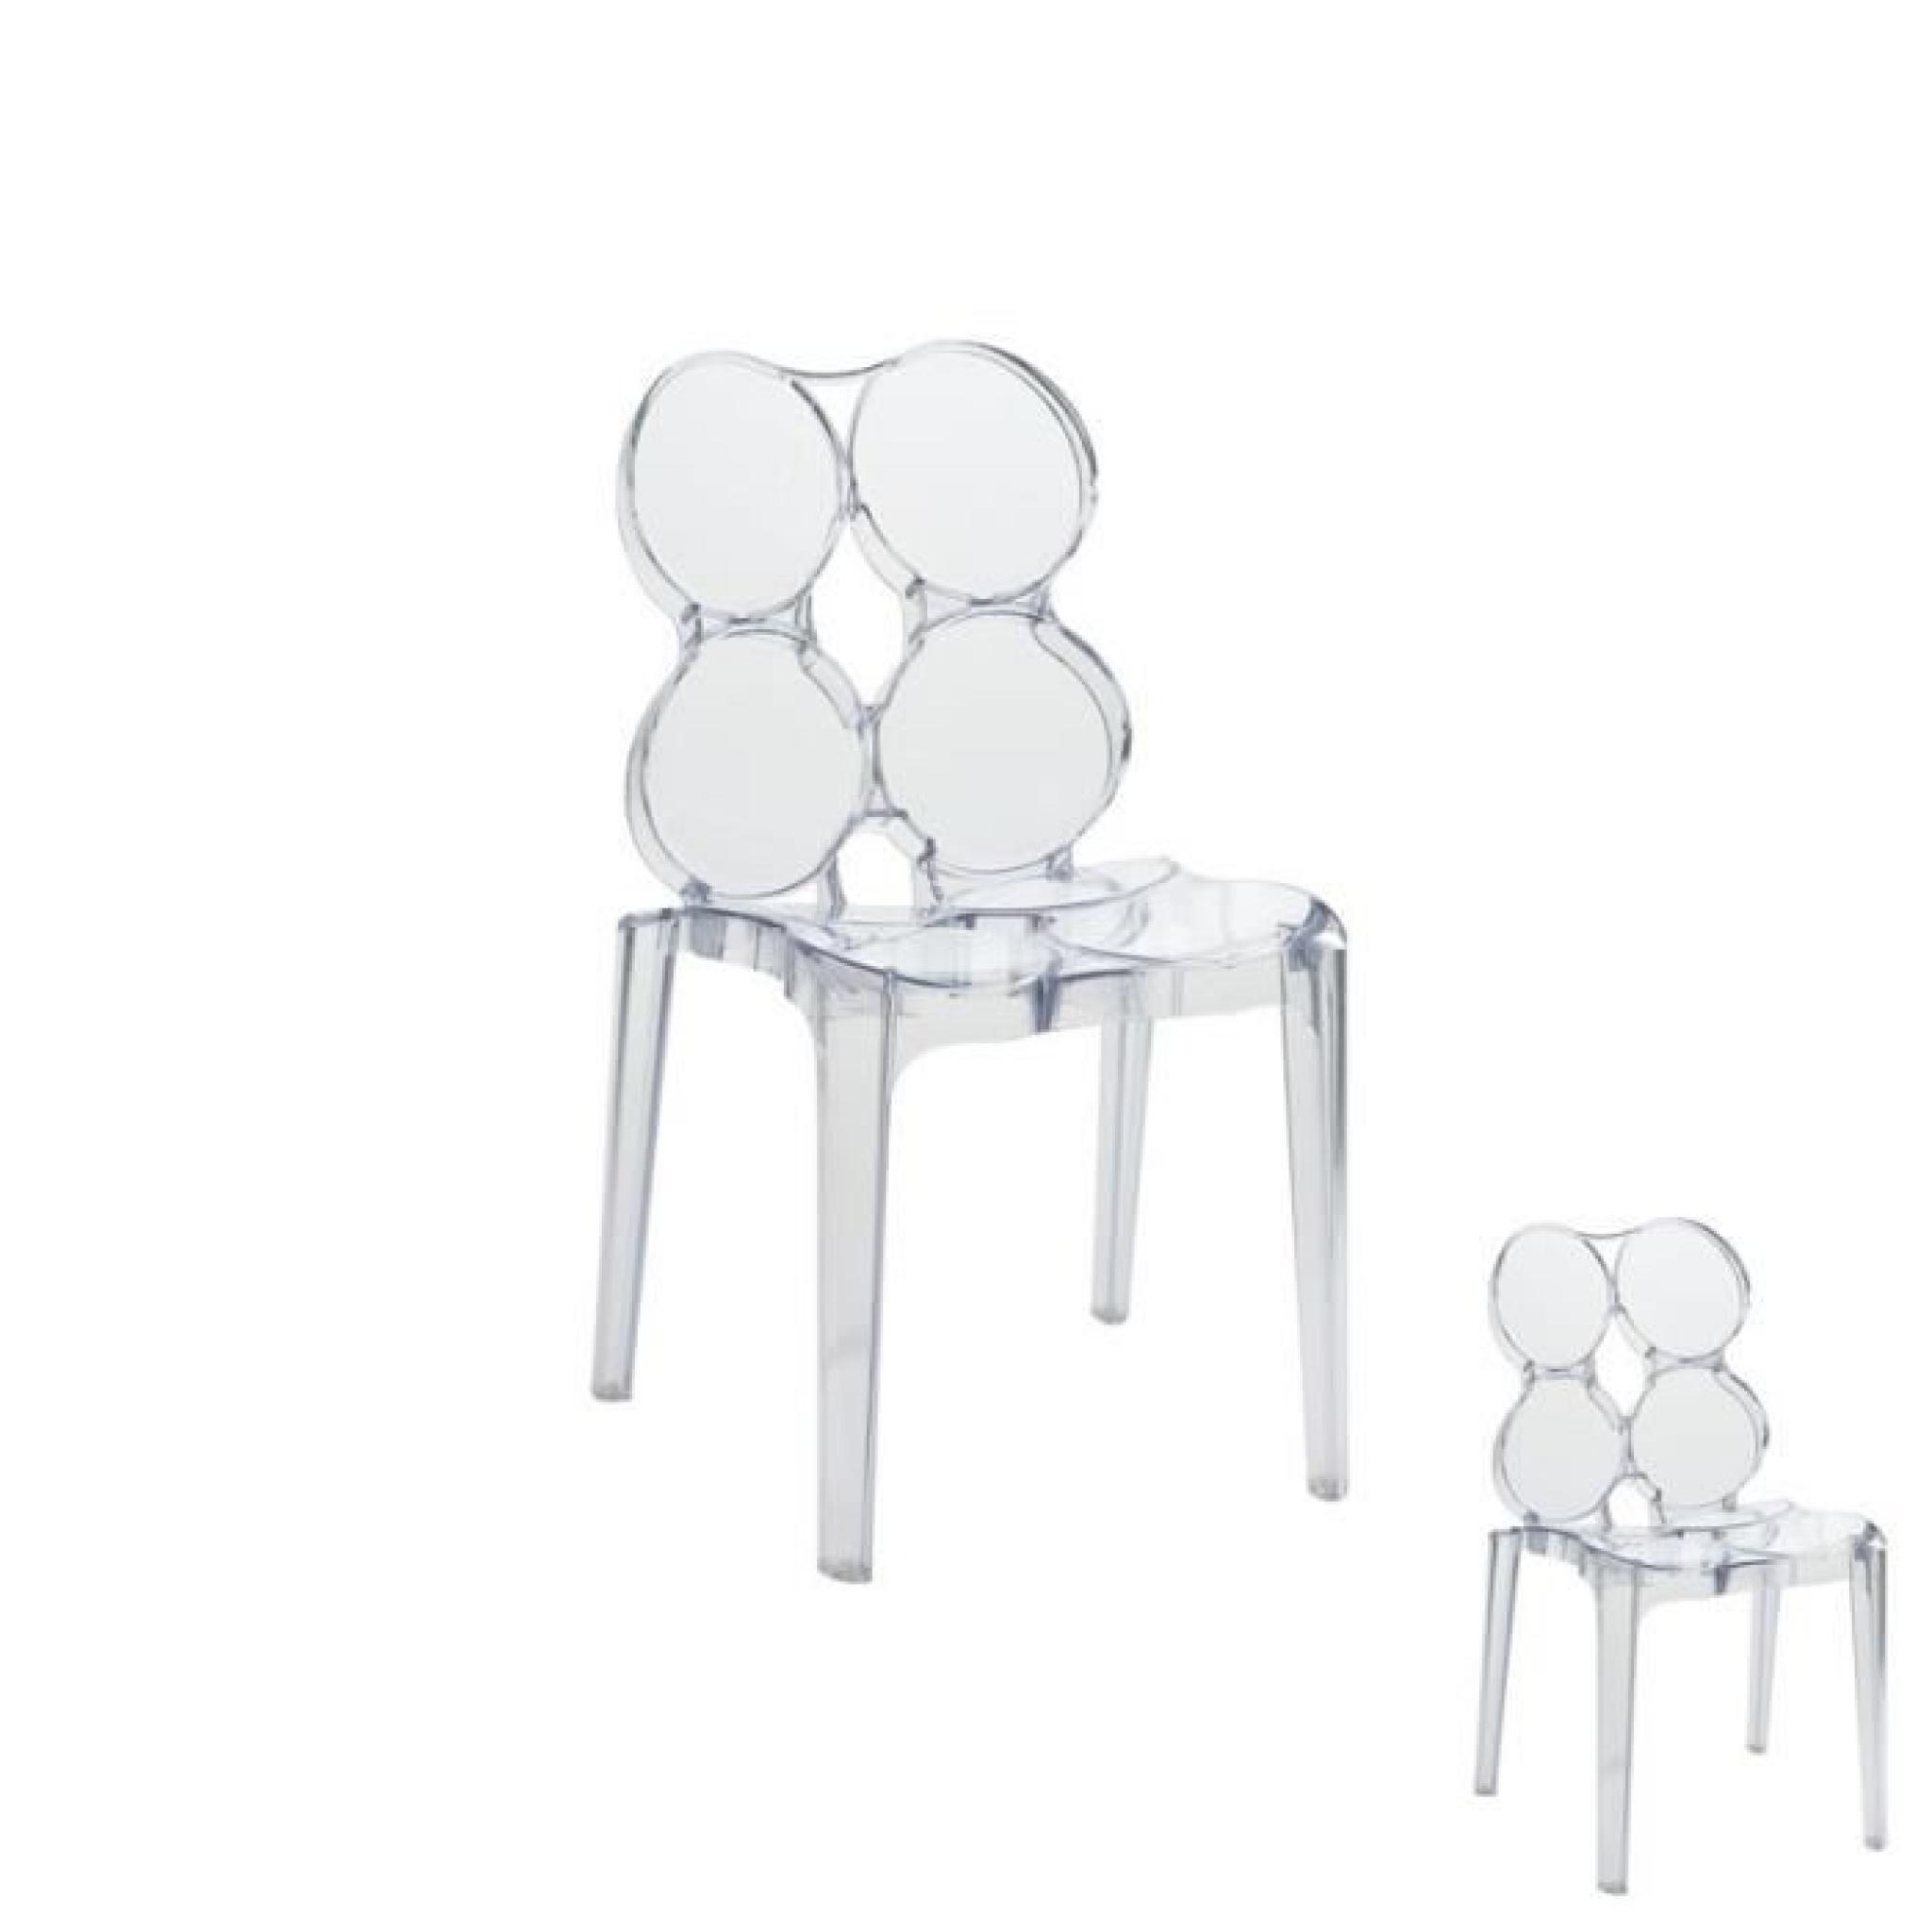 Duo de chaises Transparent - JELLY  - Taille : L 56 x l 48 x H 85 - Couleur marketing : Transparent